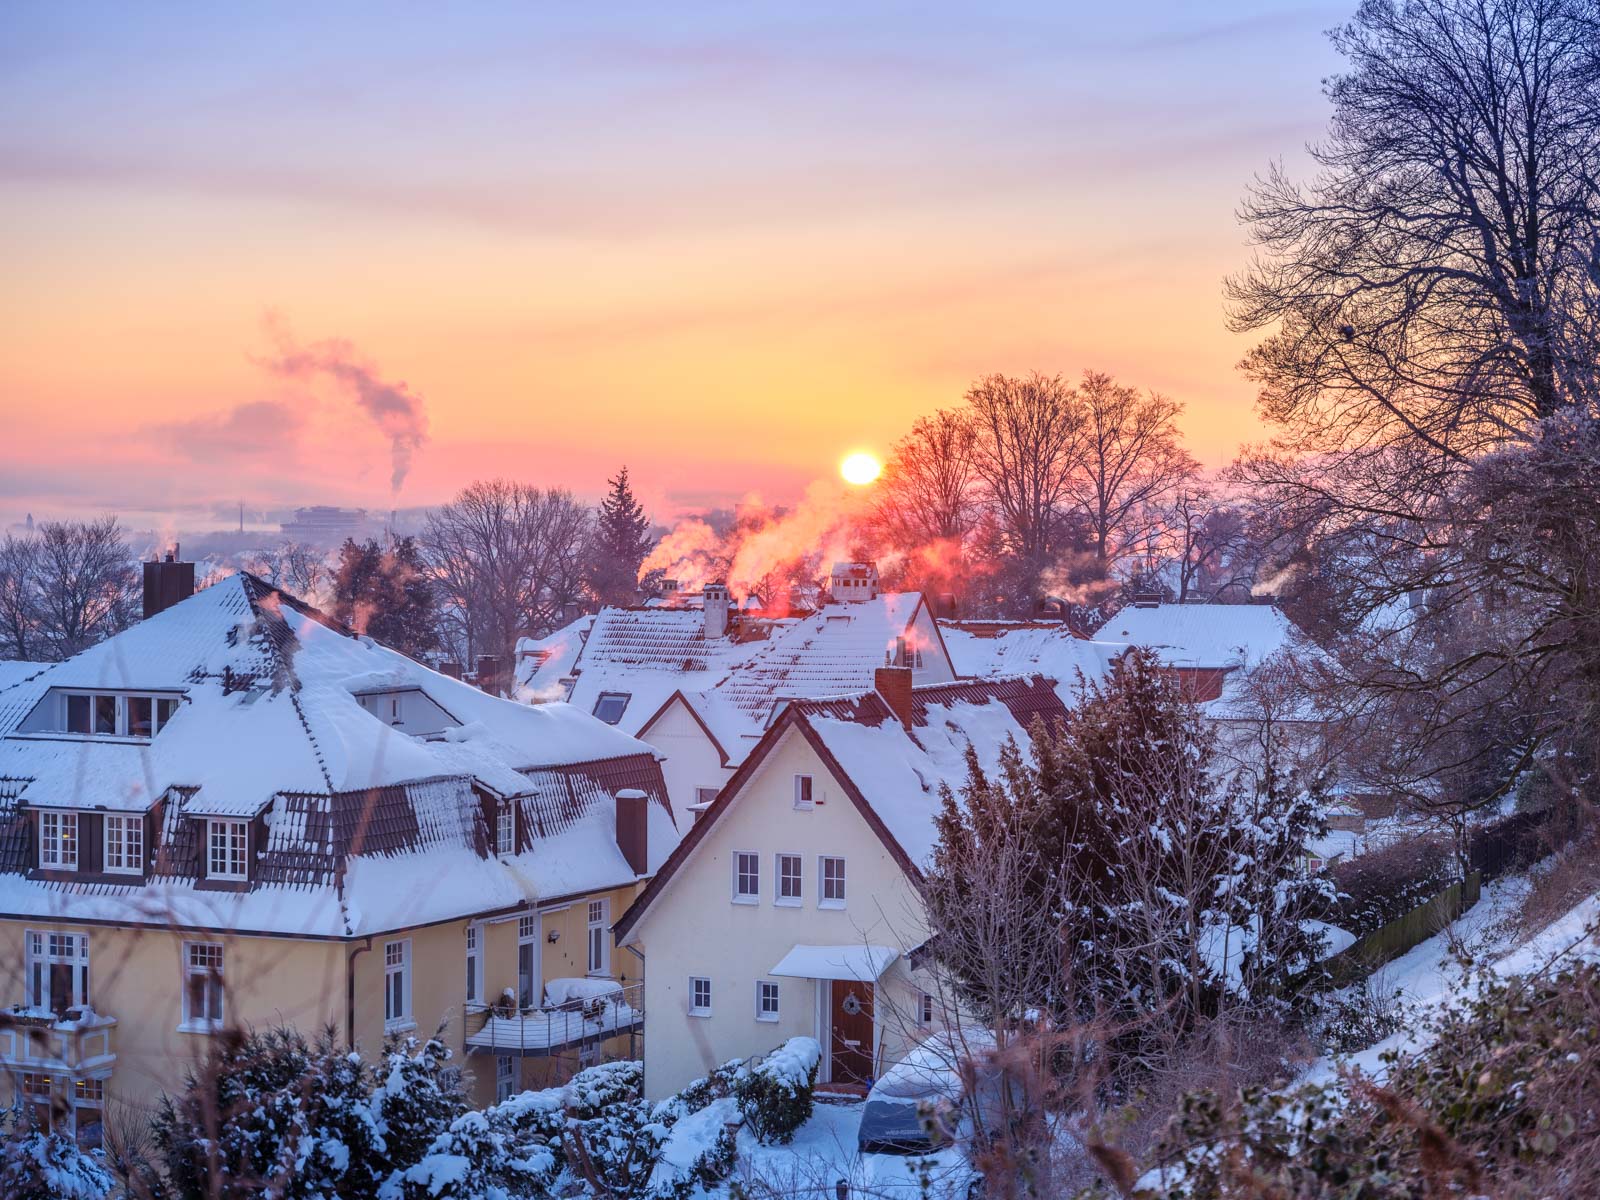 Winter sunrise over Bielefeld (Germany).